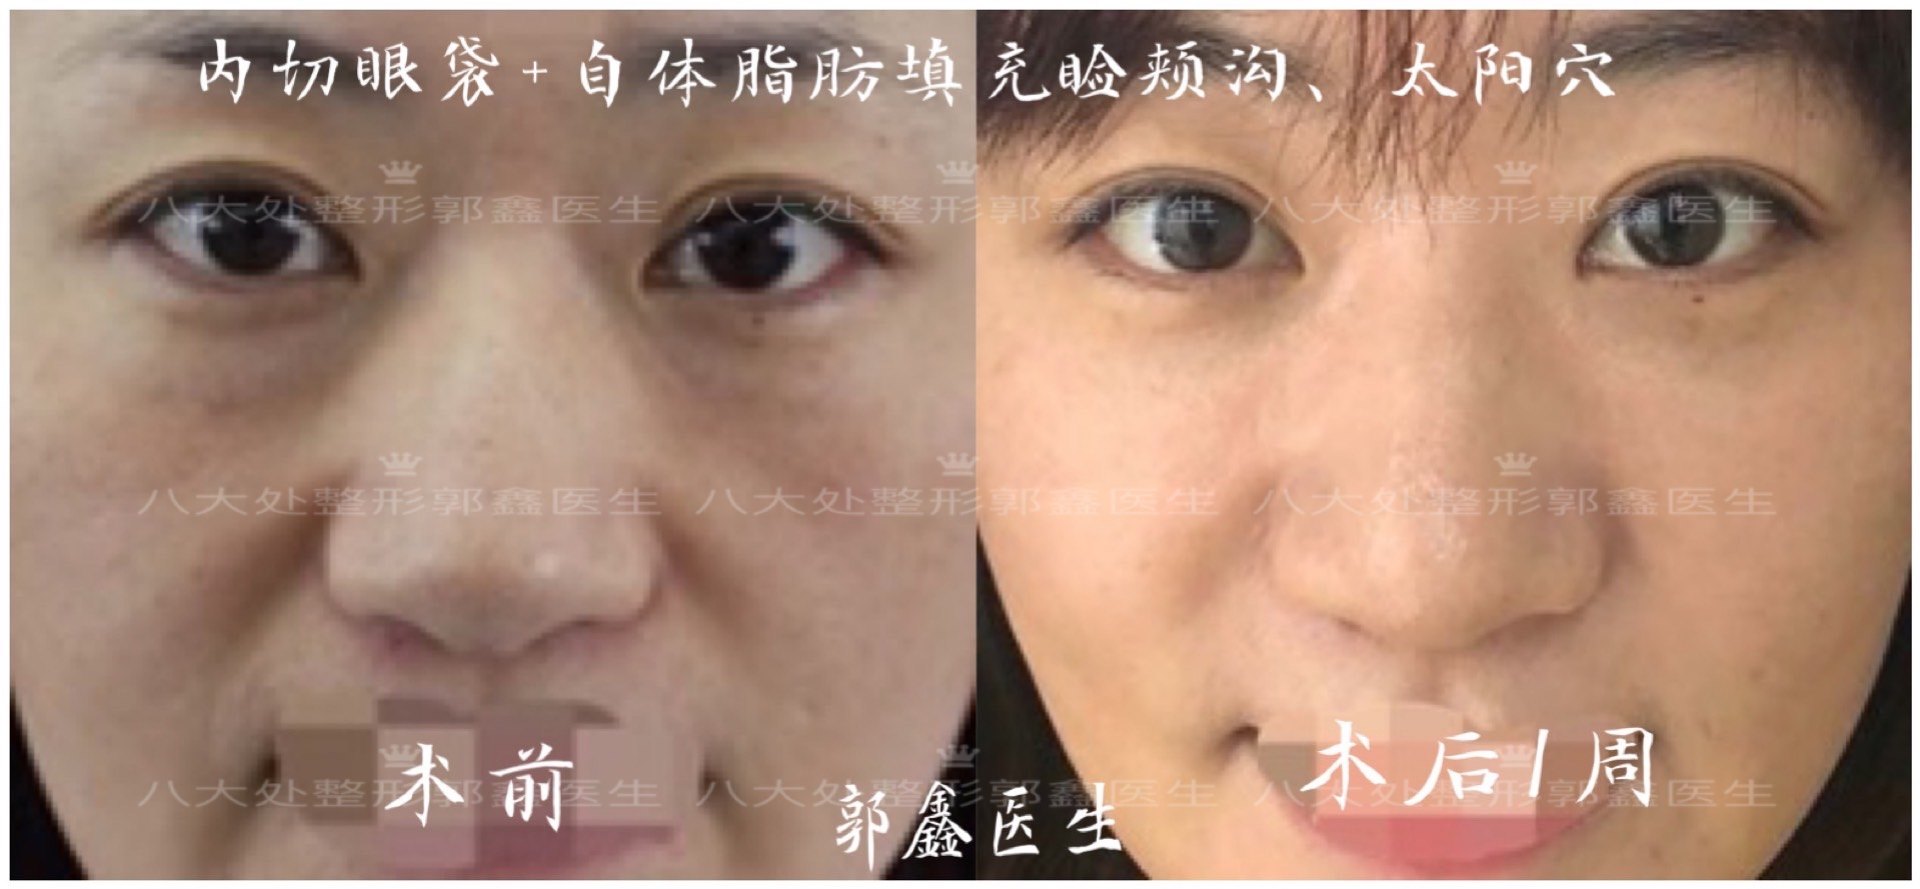 面部吸脂和去颊脂垫手术的区别👉小v脸是每个女生都梦_圈子-新氧美容整形